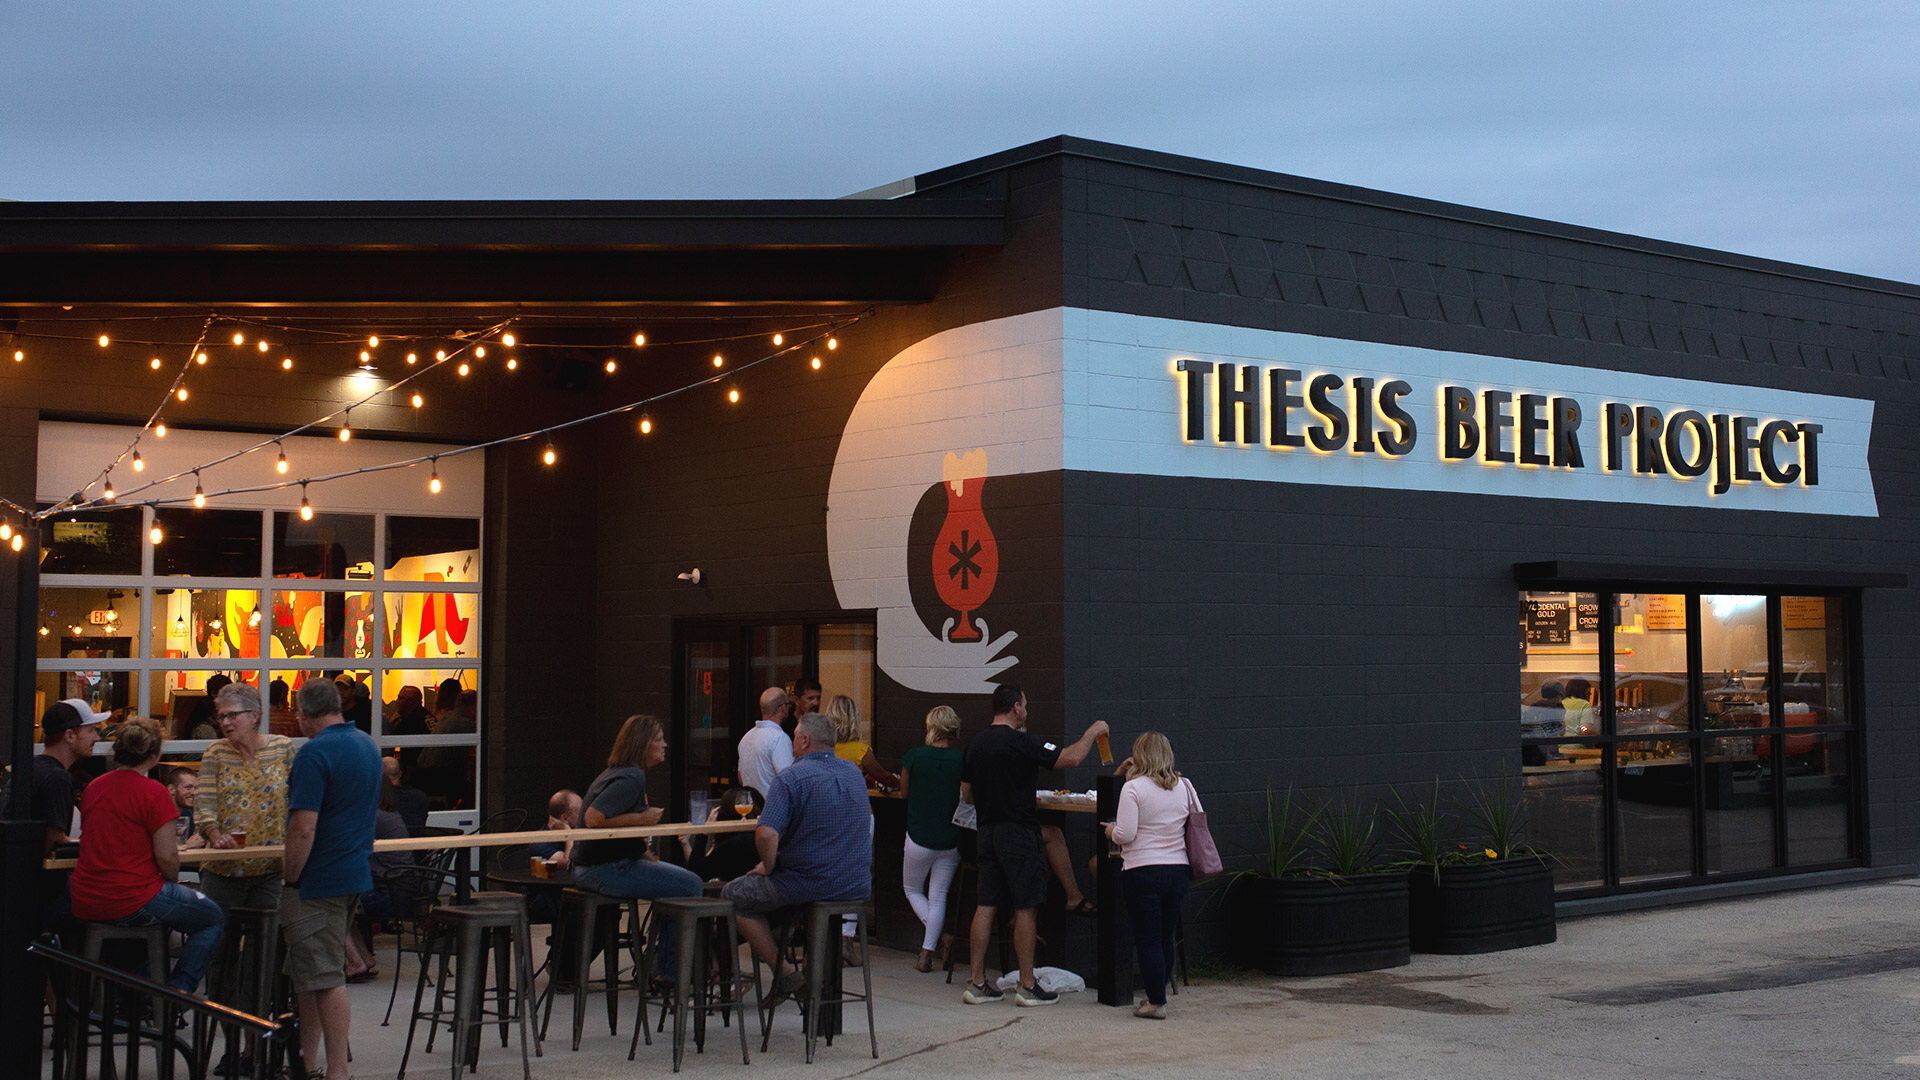 Beer & Branding: Thesis Beer Project